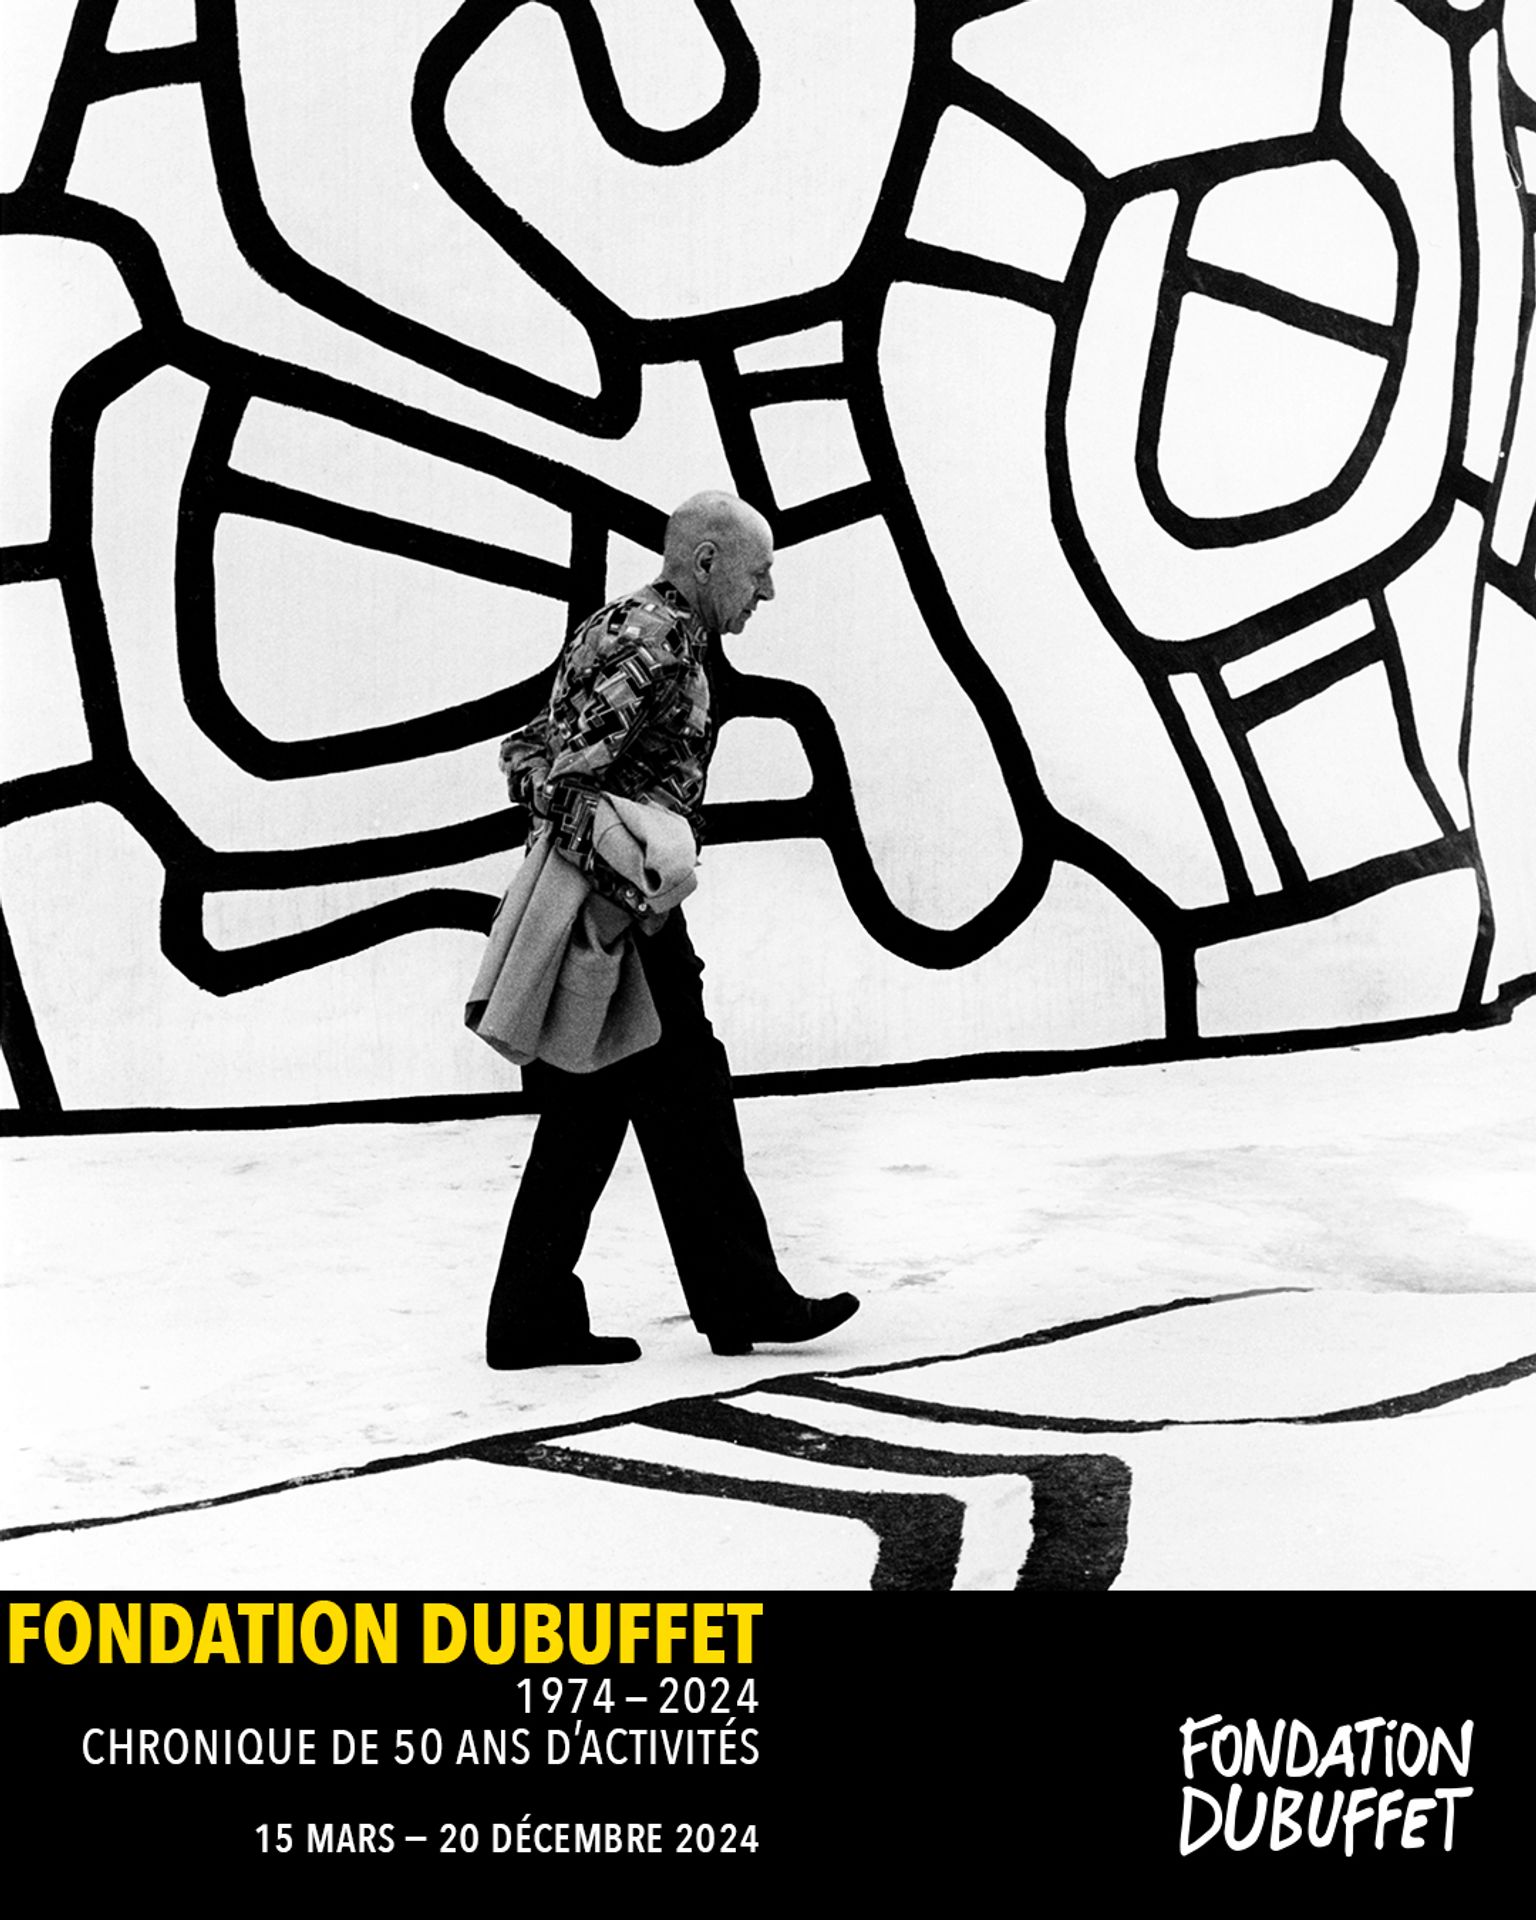 Fondation Dubuffet, 1974-2024 Chronique de 50 ans d’activités